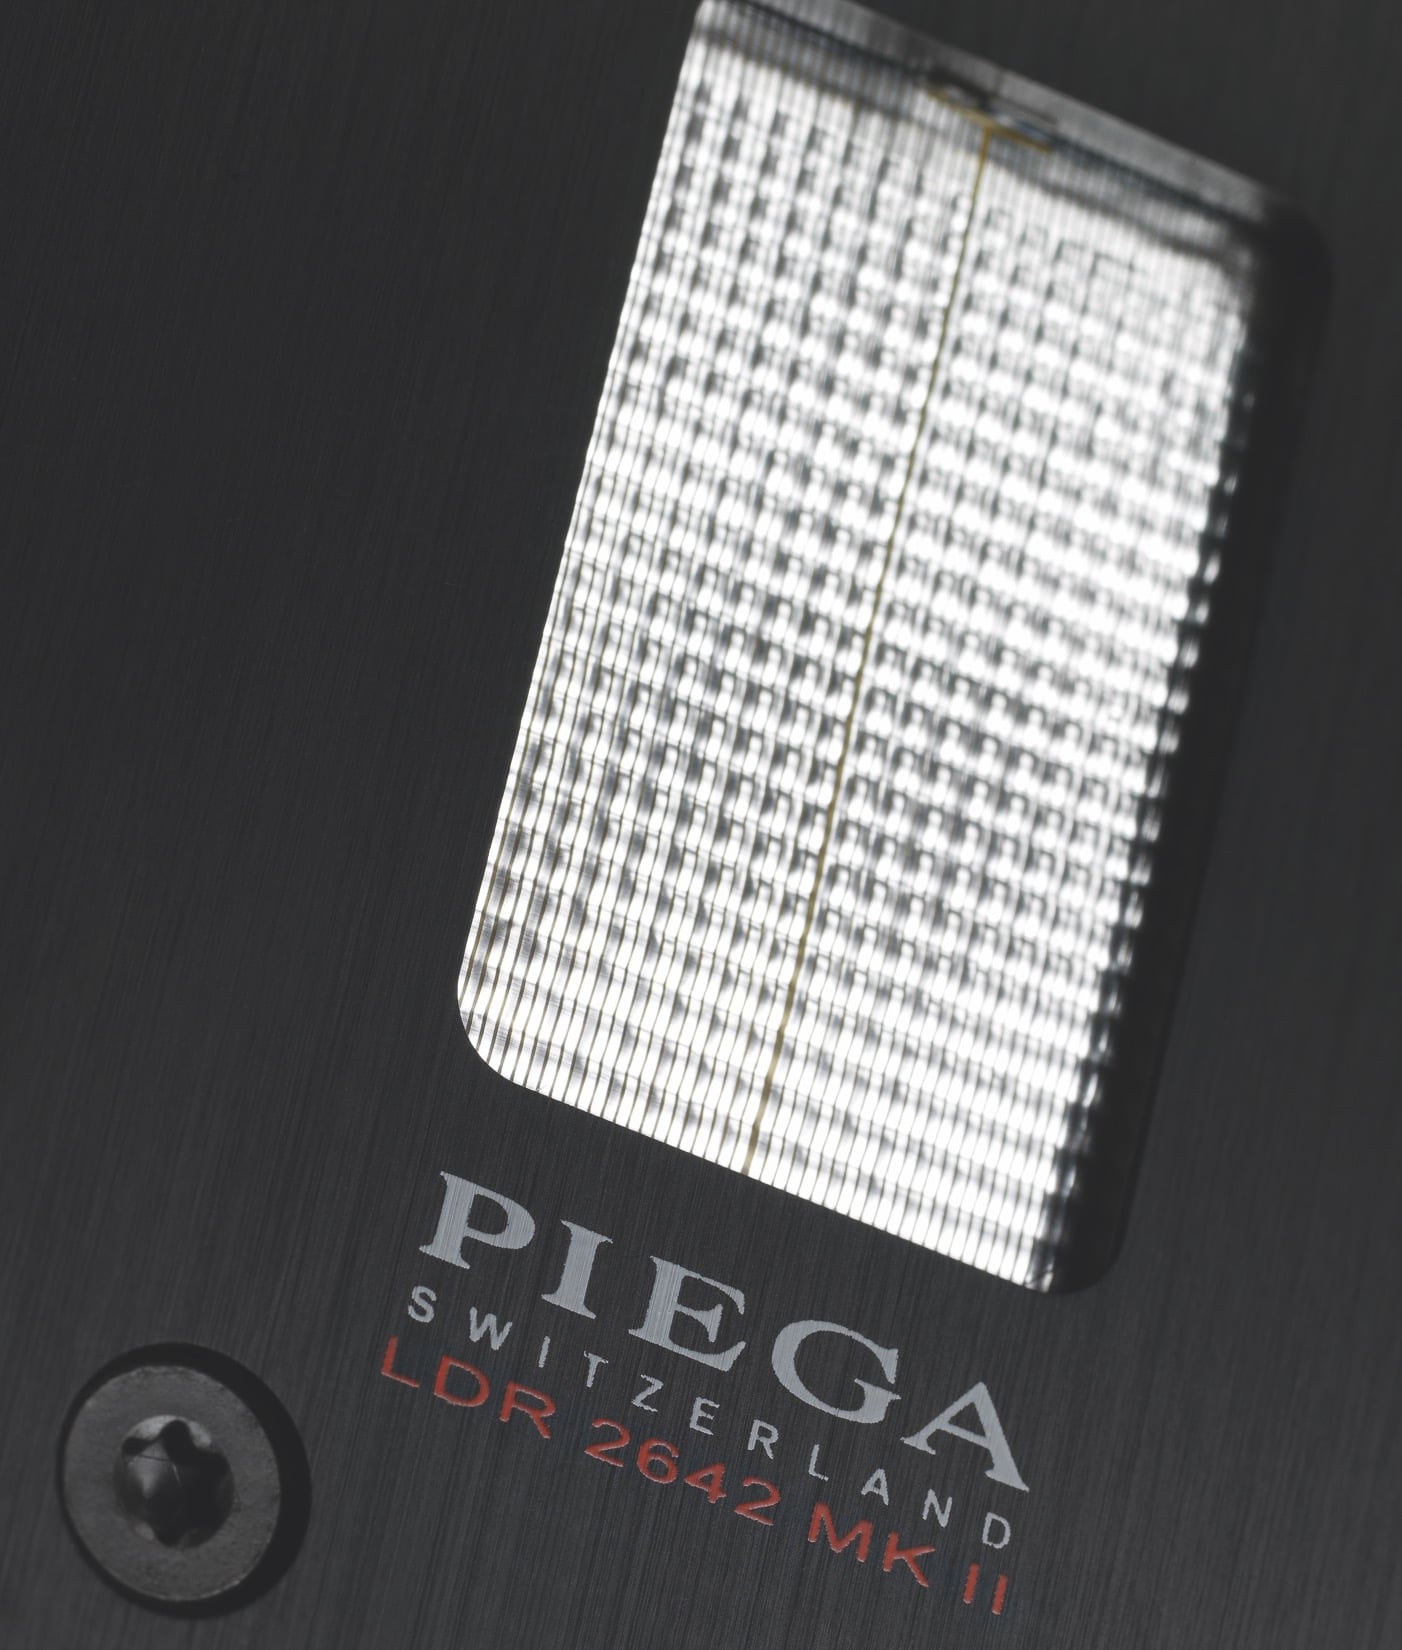 Premium Series Speakers from PIEGA